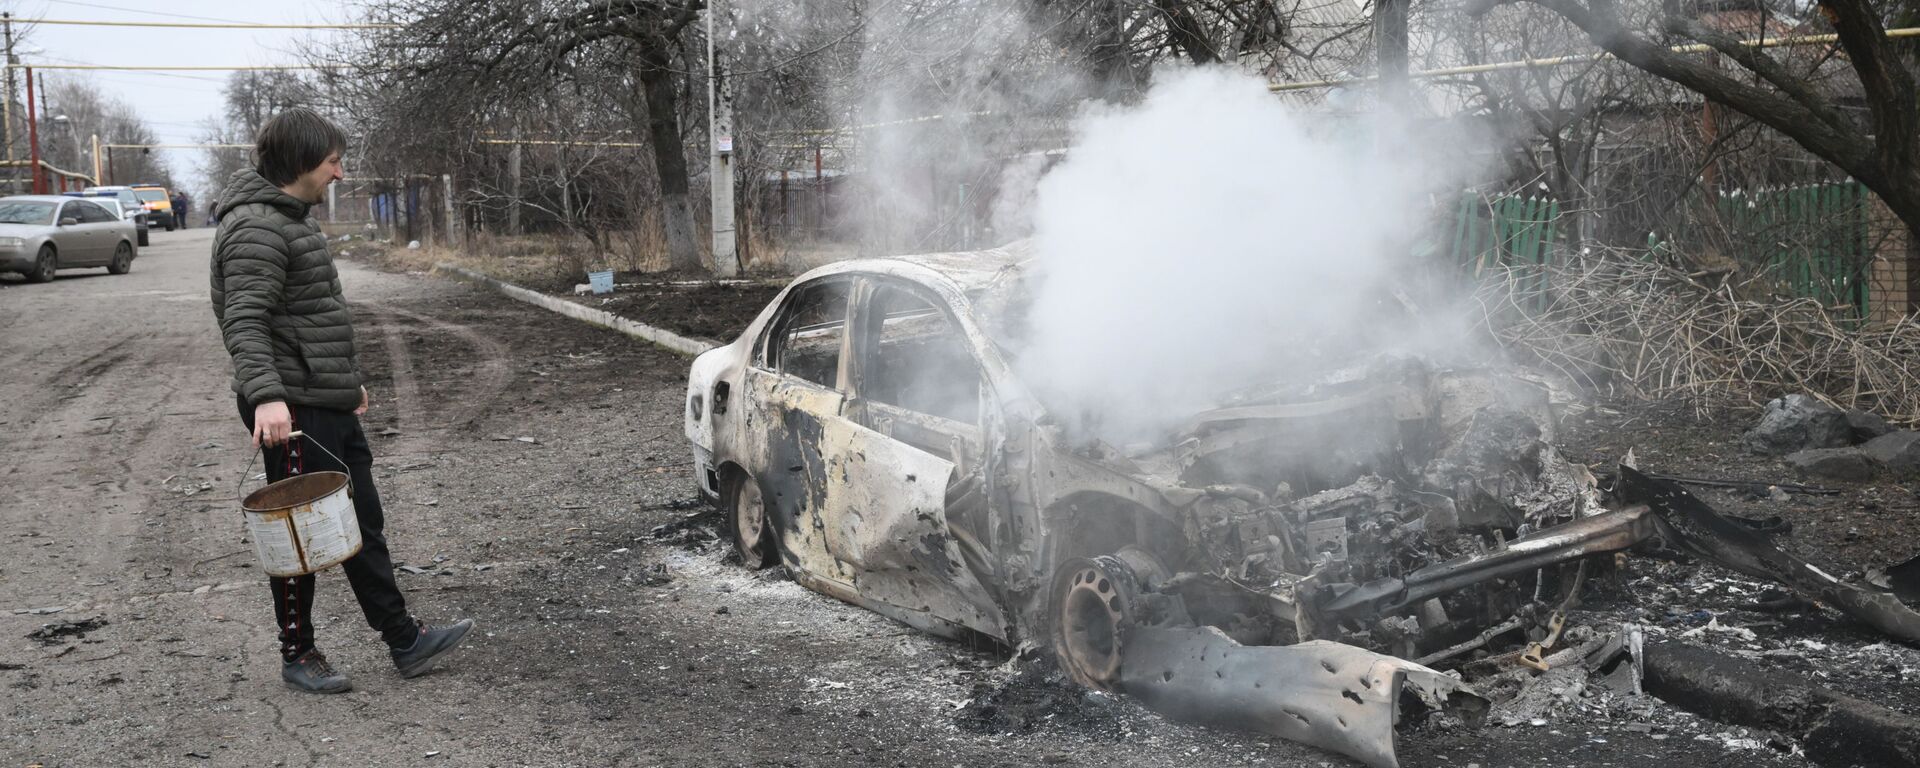 الوضع في دونيتسك بعد القصف الصاروخي من قبل الجيش الأوكراني، 28 فبراير 2022 - سبوتنيك عربي, 1920, 18.05.2022